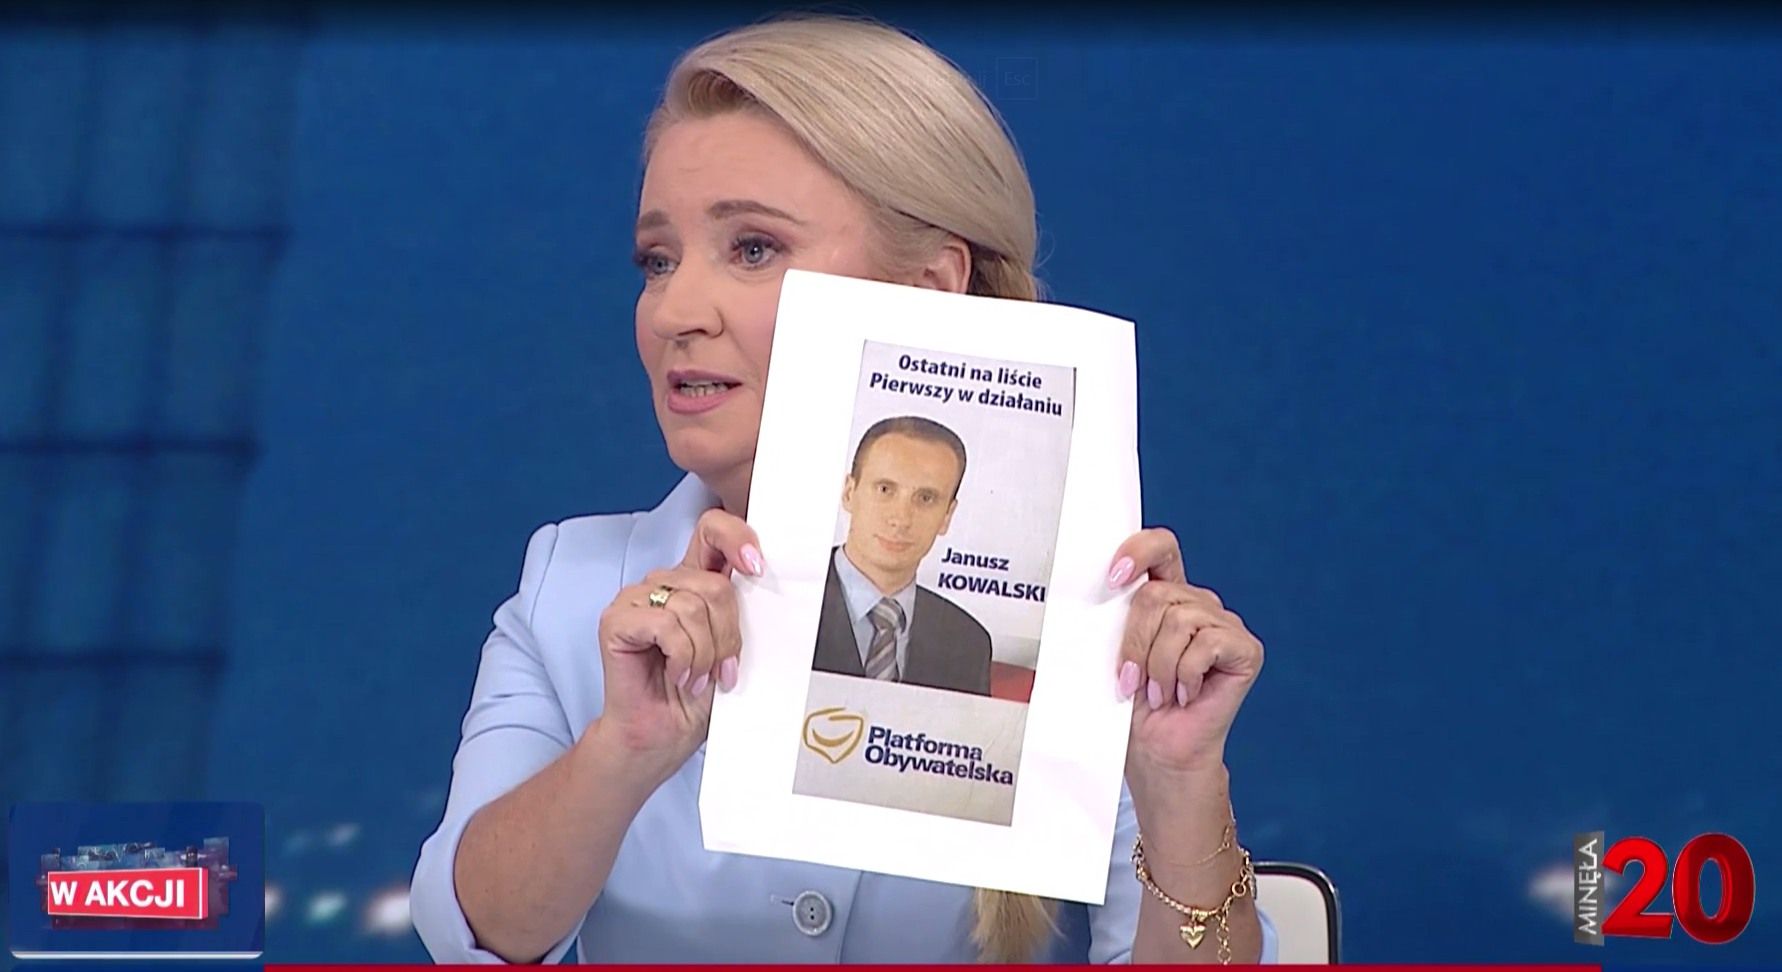 W trakcie debaty w TVP Info posłanka KO wyjęła zdjęcie upokarzające posła SP, Janusza Kowalskiego.